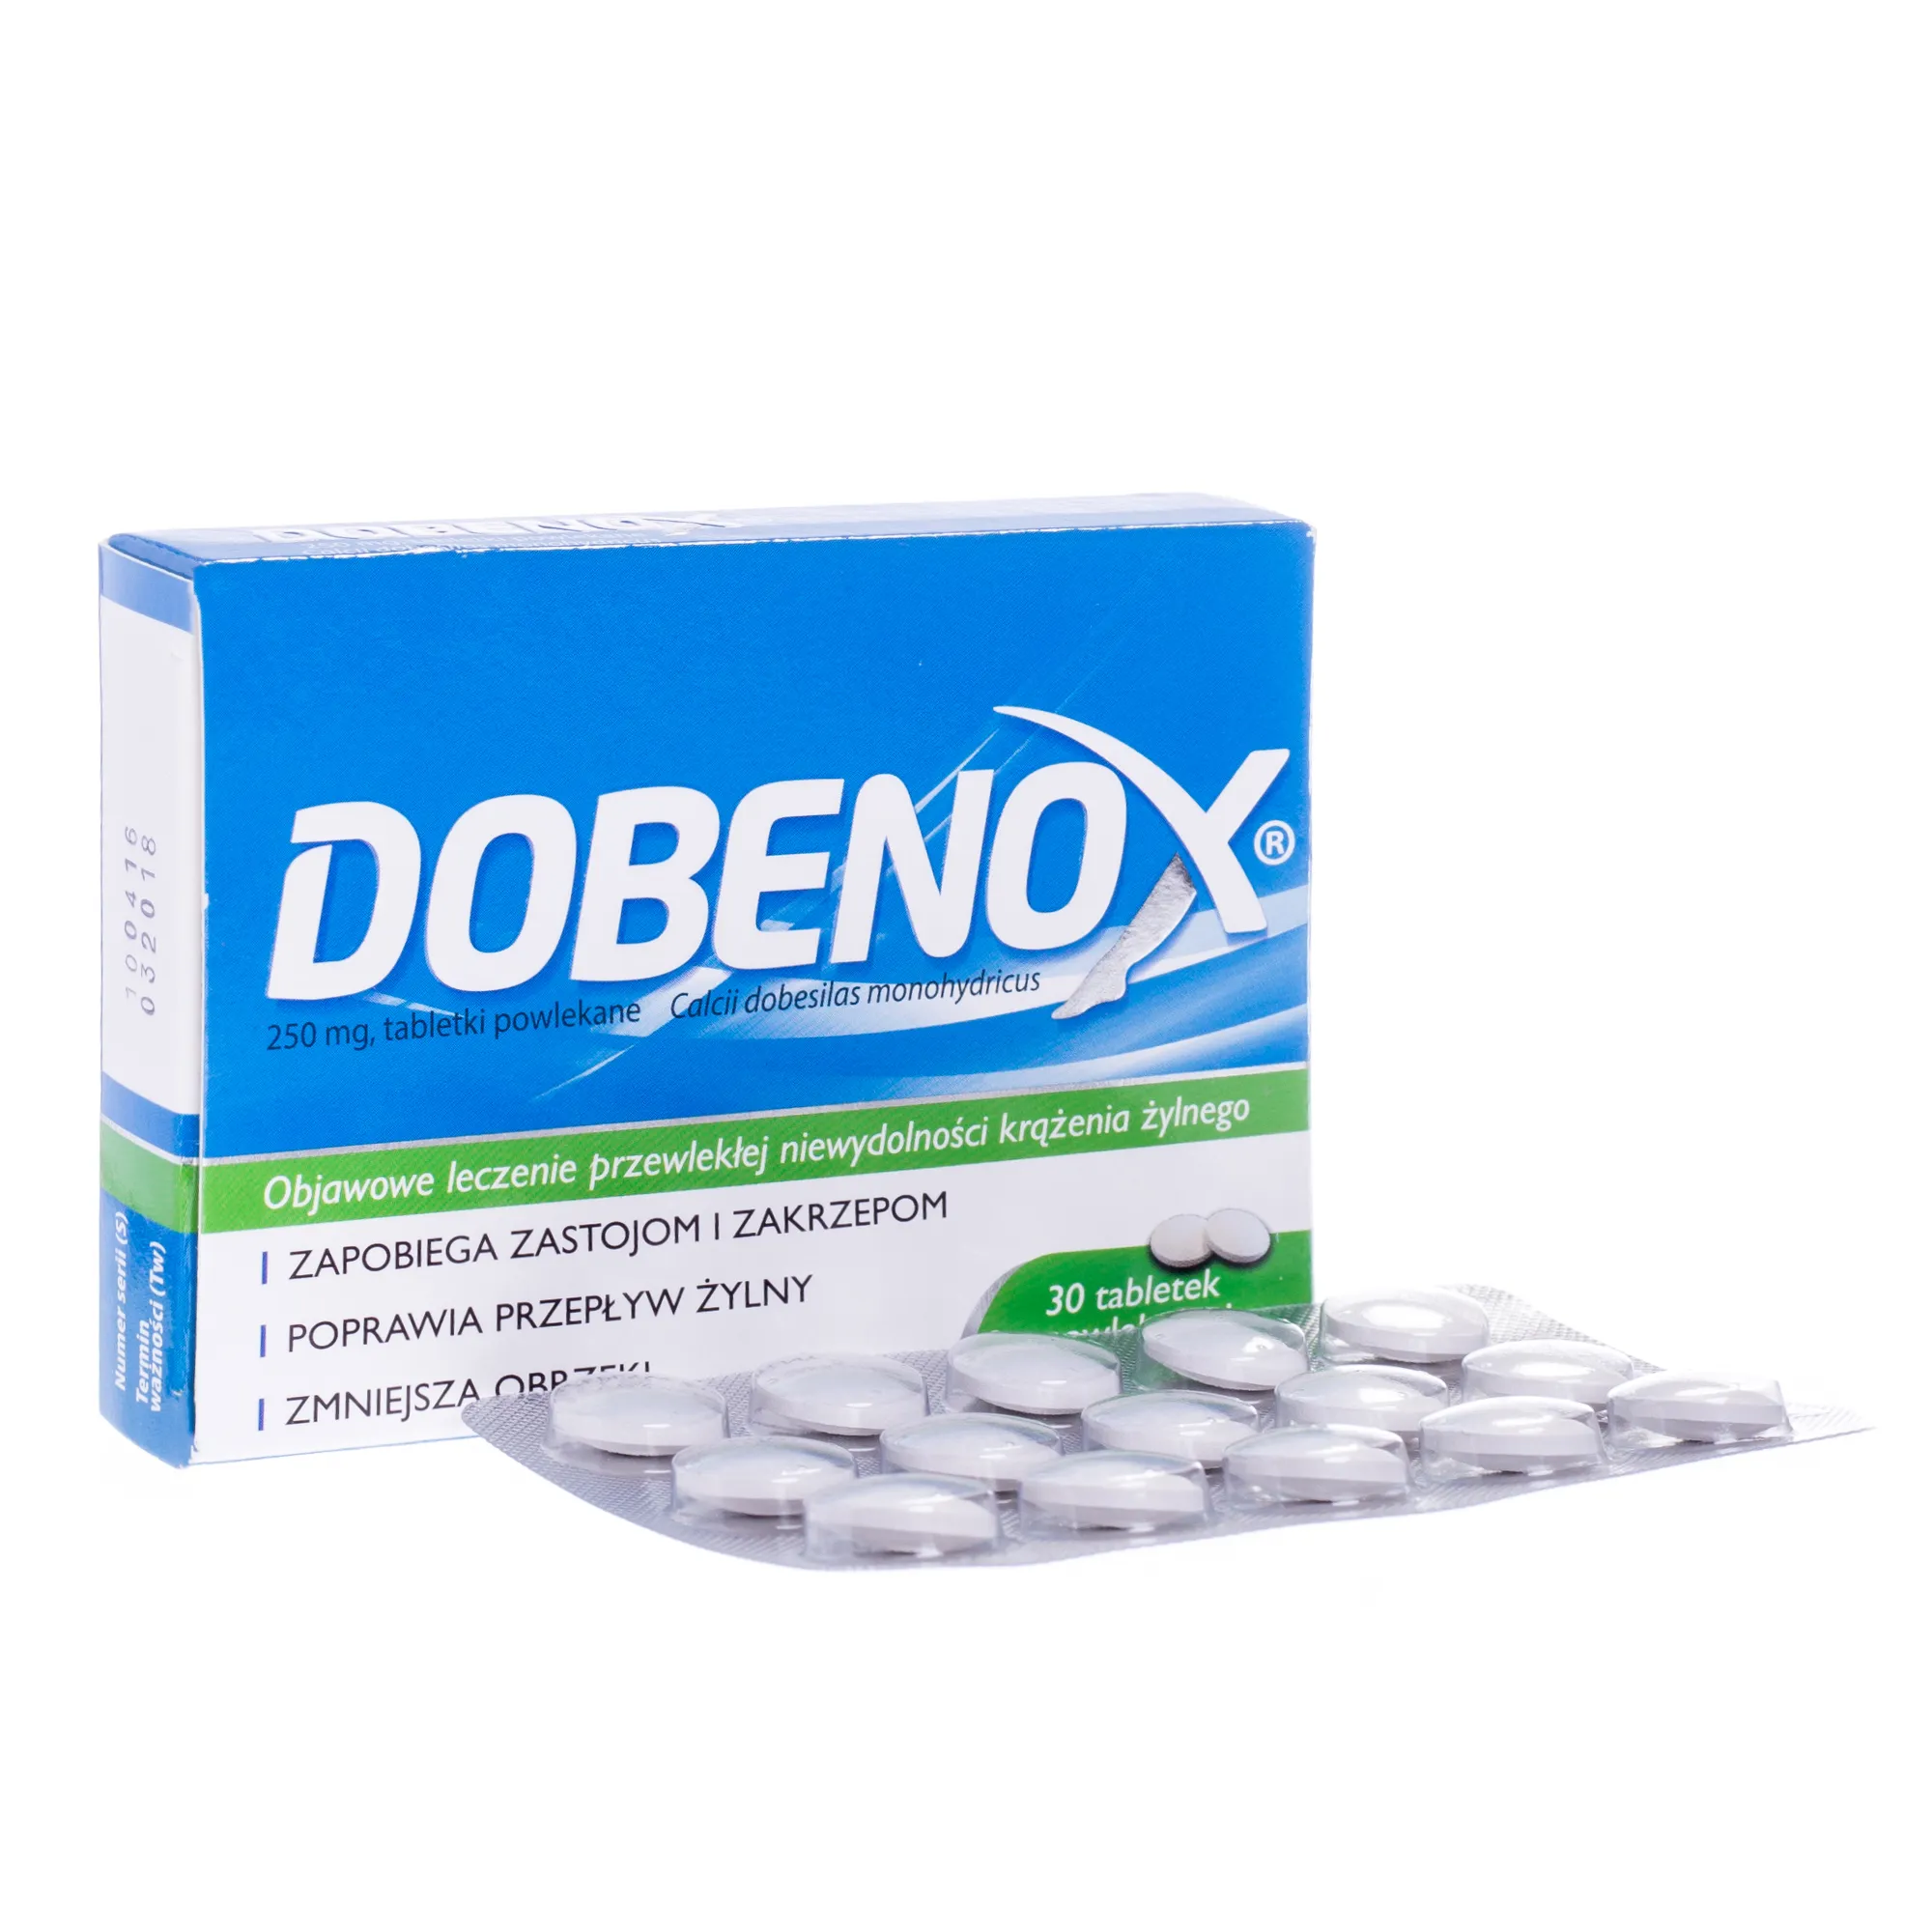 Dobenox, zapobiega zastojom i zakrzepom oraz poprawia przepływ żylny, 30 tabletek powlekanych